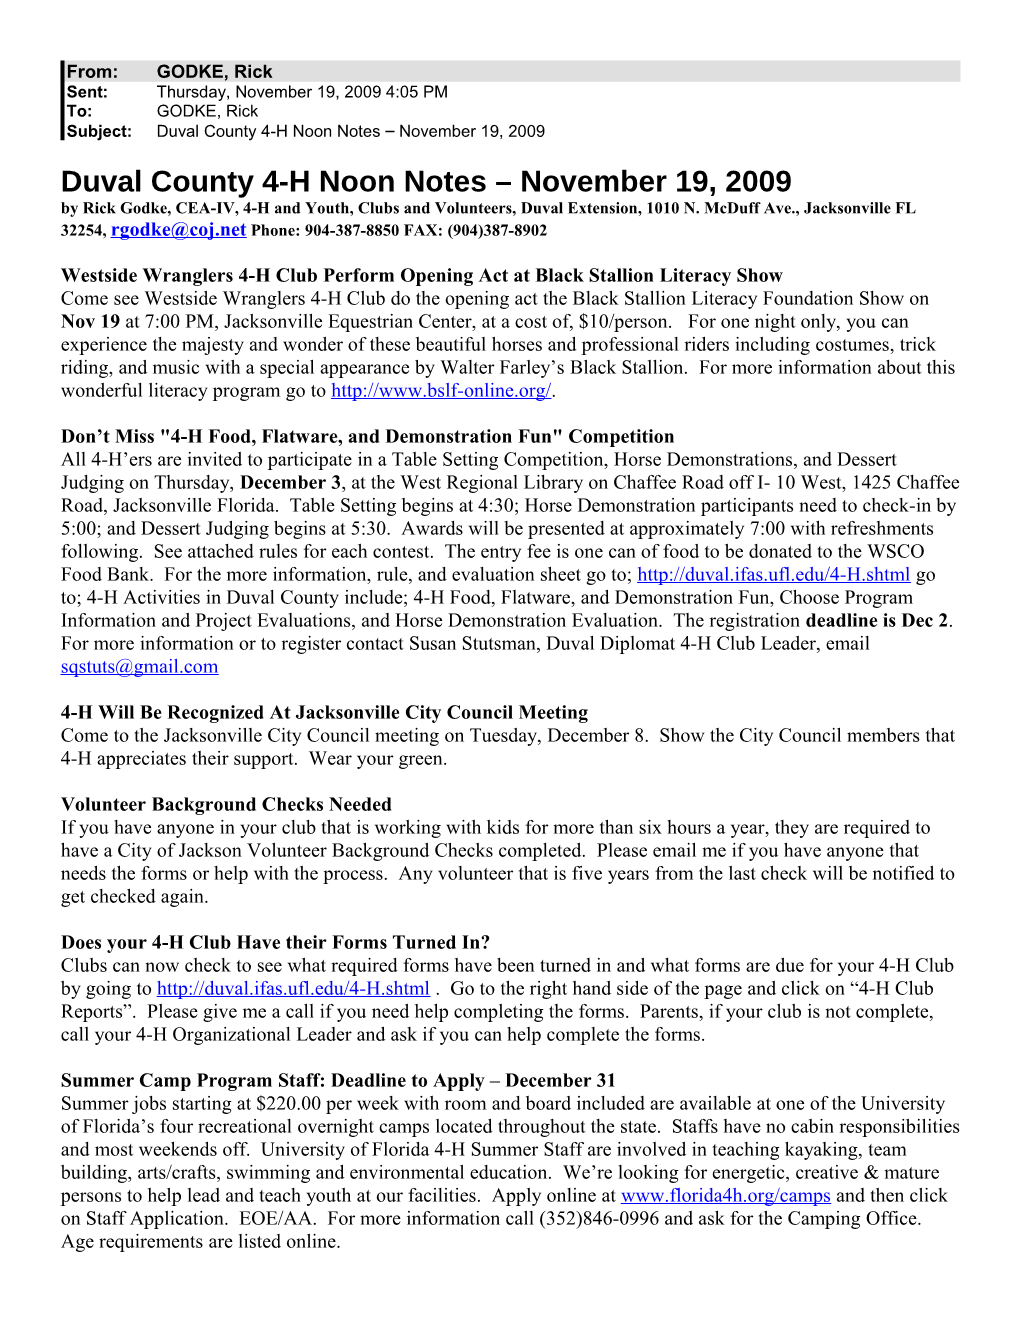 Duval County 4-H Noon Notes November 19, 2009